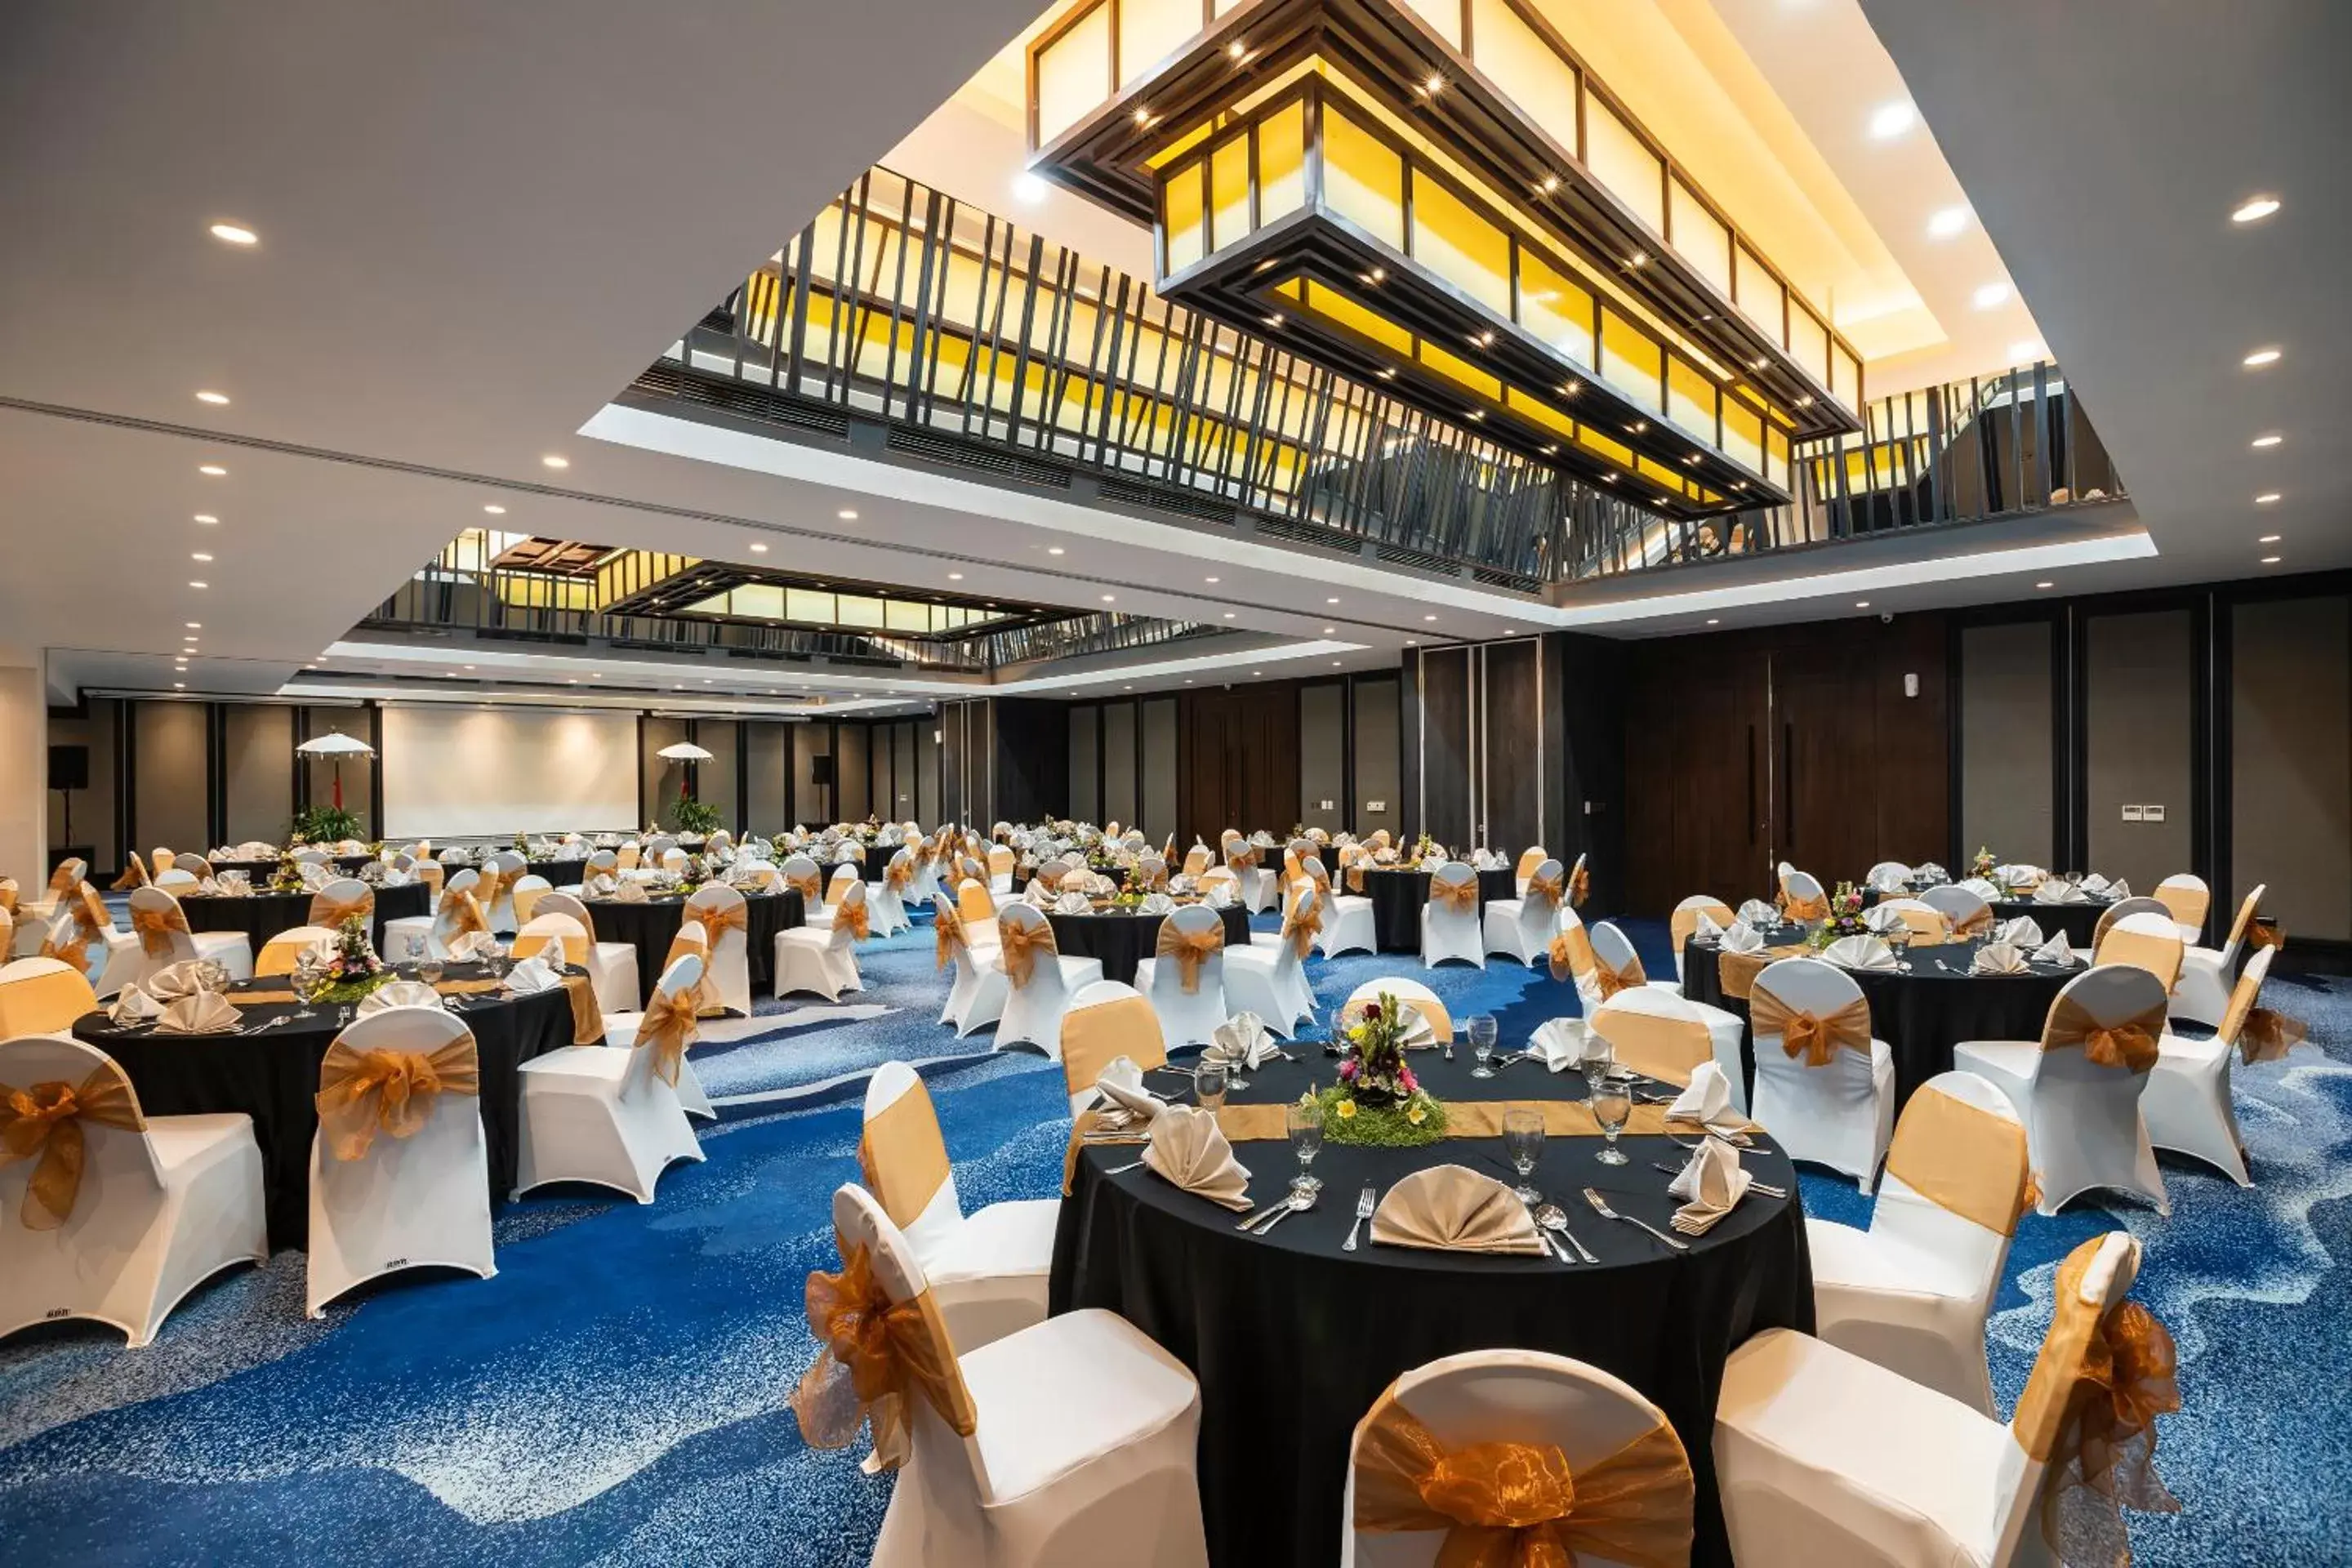 Banquet/Function facilities, Banquet Facilities in Bali Dynasty Resort